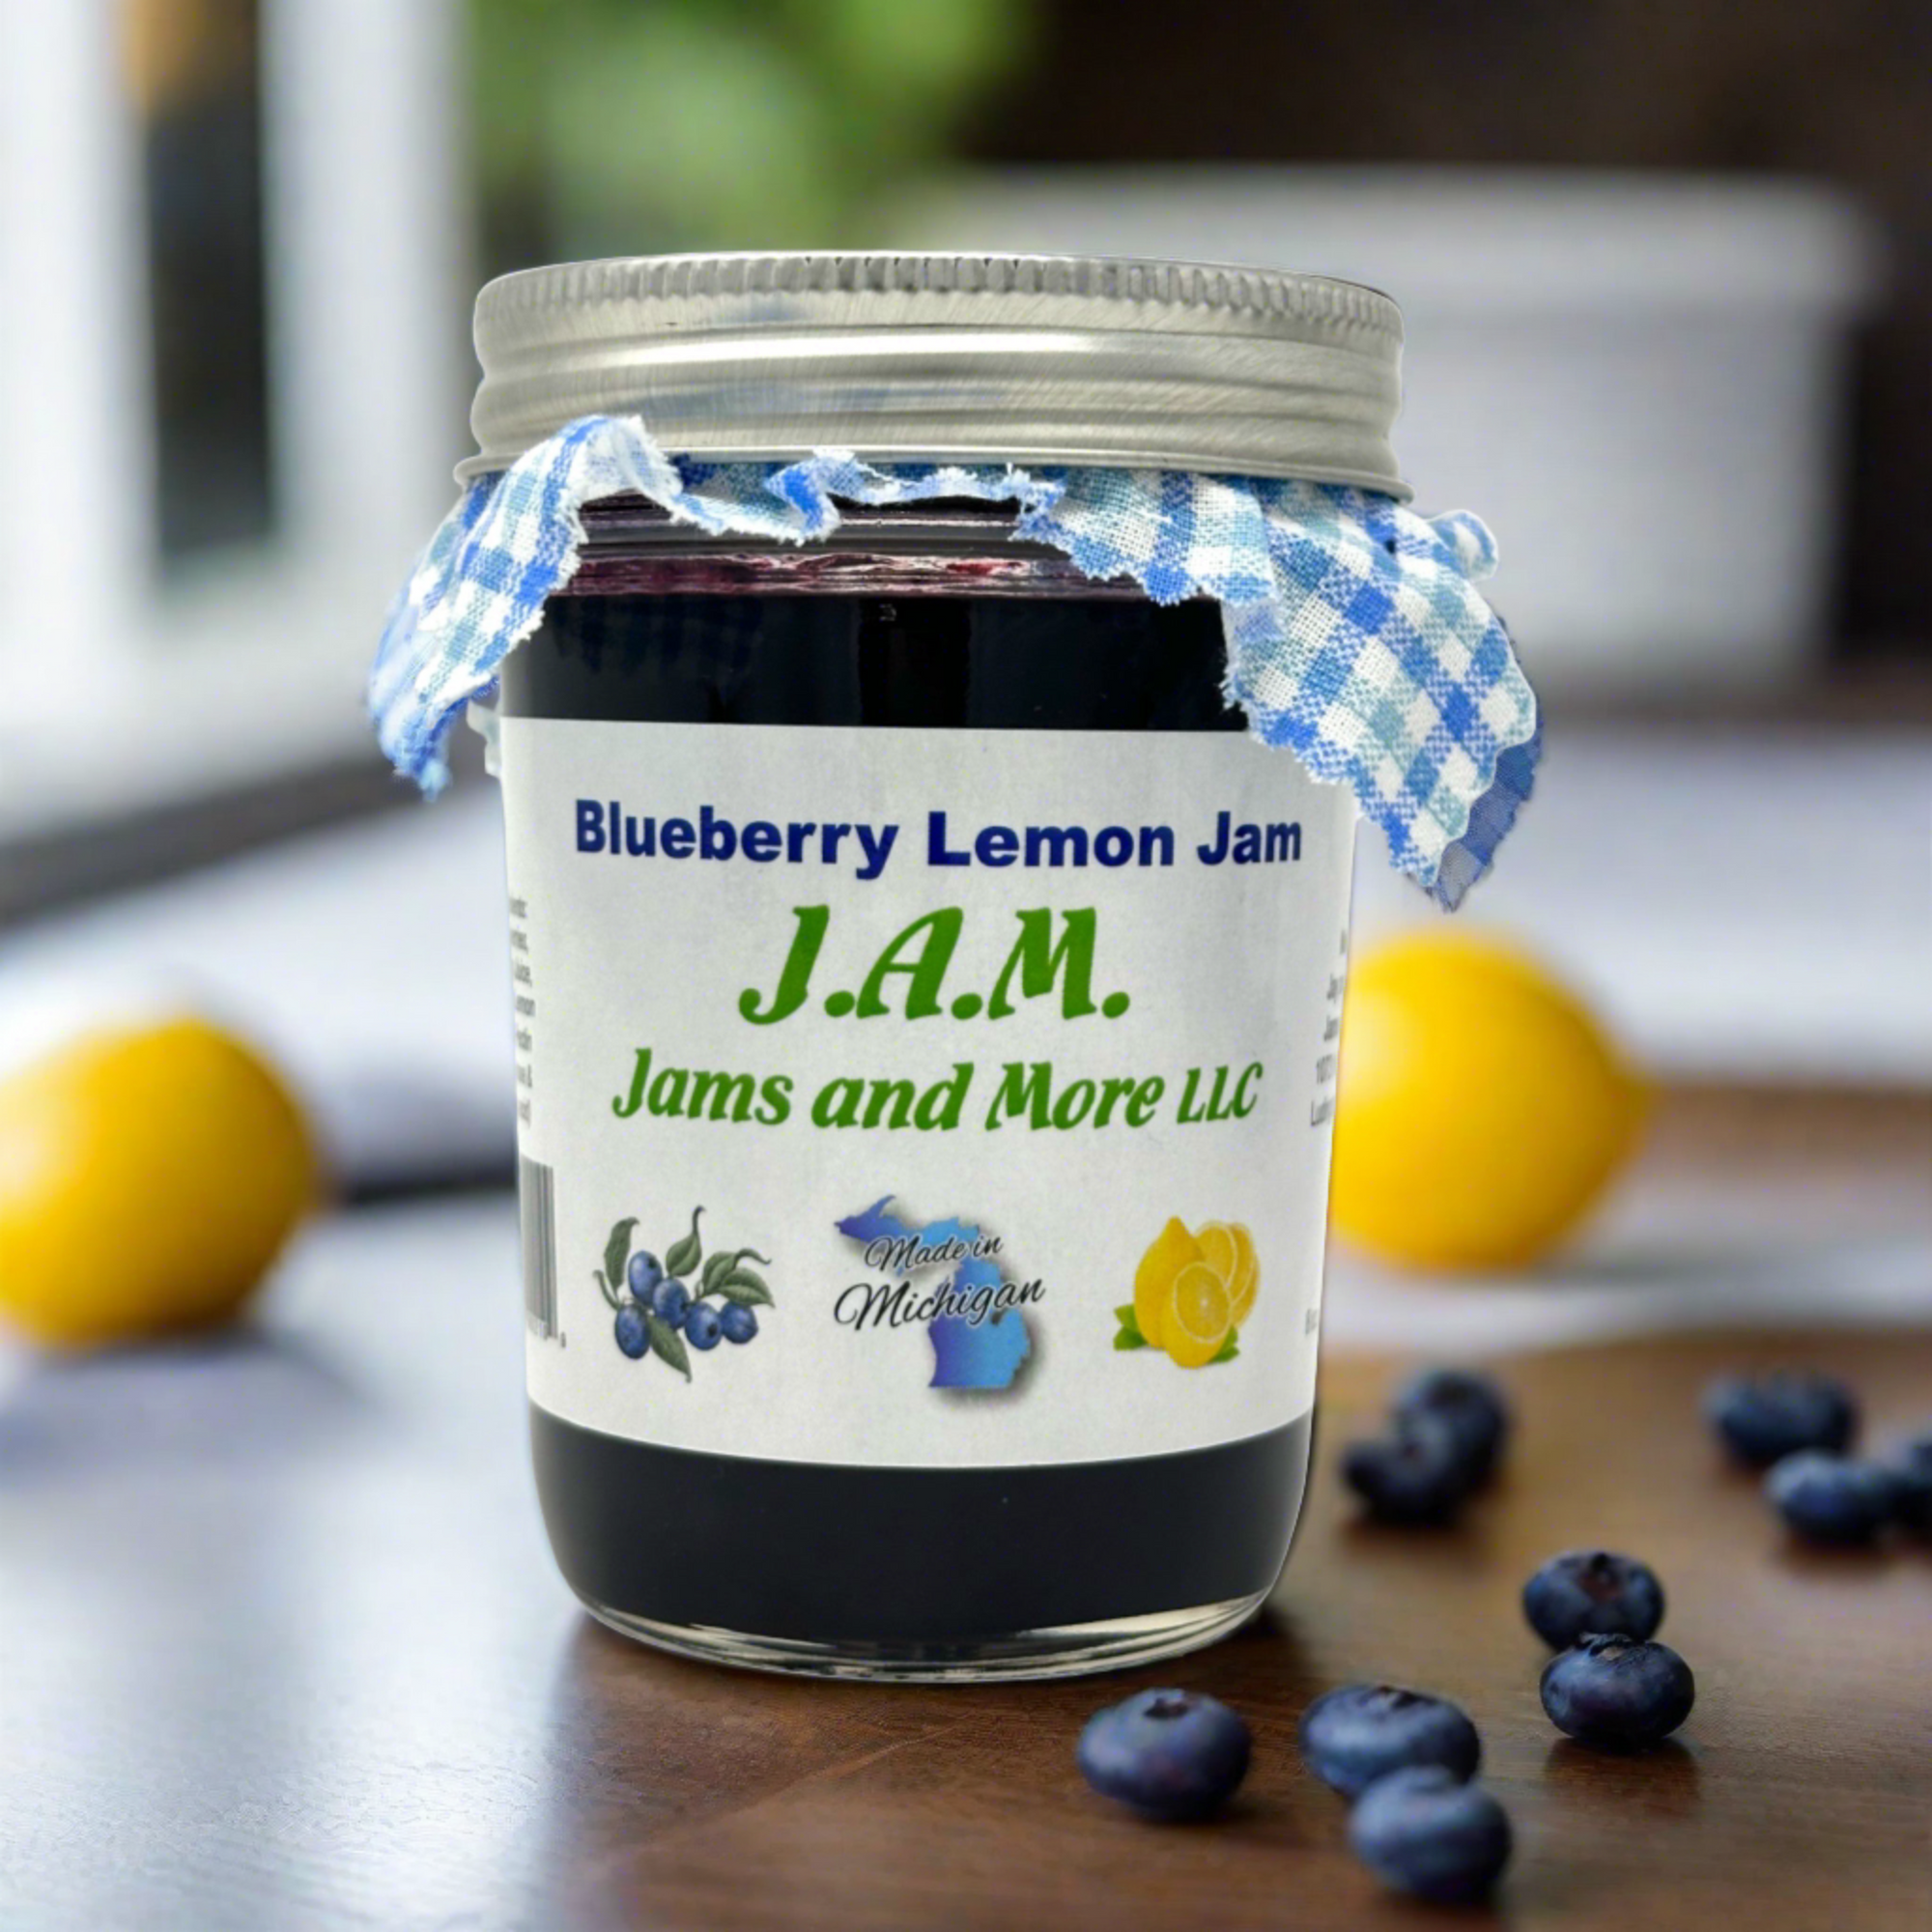 Blueberry Lemon Jam - The Roadside